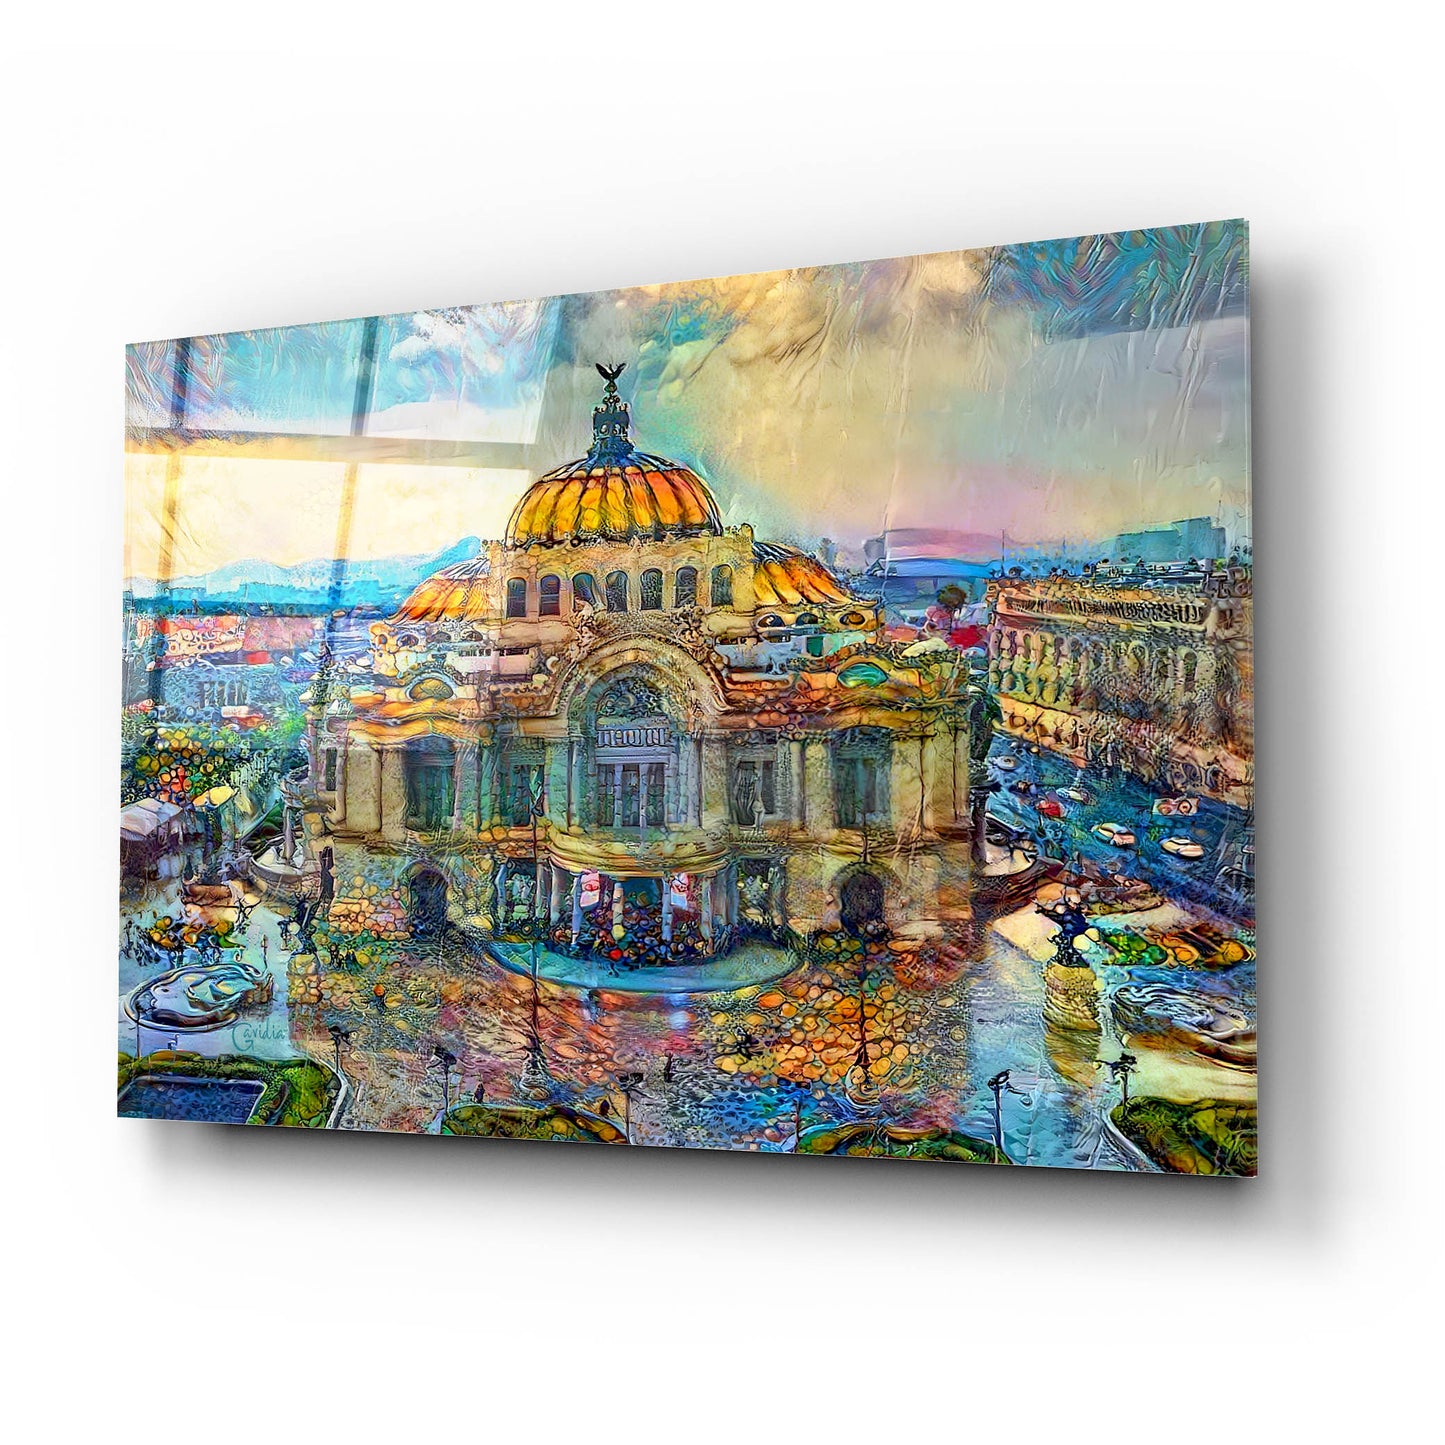 Epic Art 'Mexico City Palace of Fine Arts in the rain' by Pedro Gavidia, Acrylic Glass Wall Art,24x16